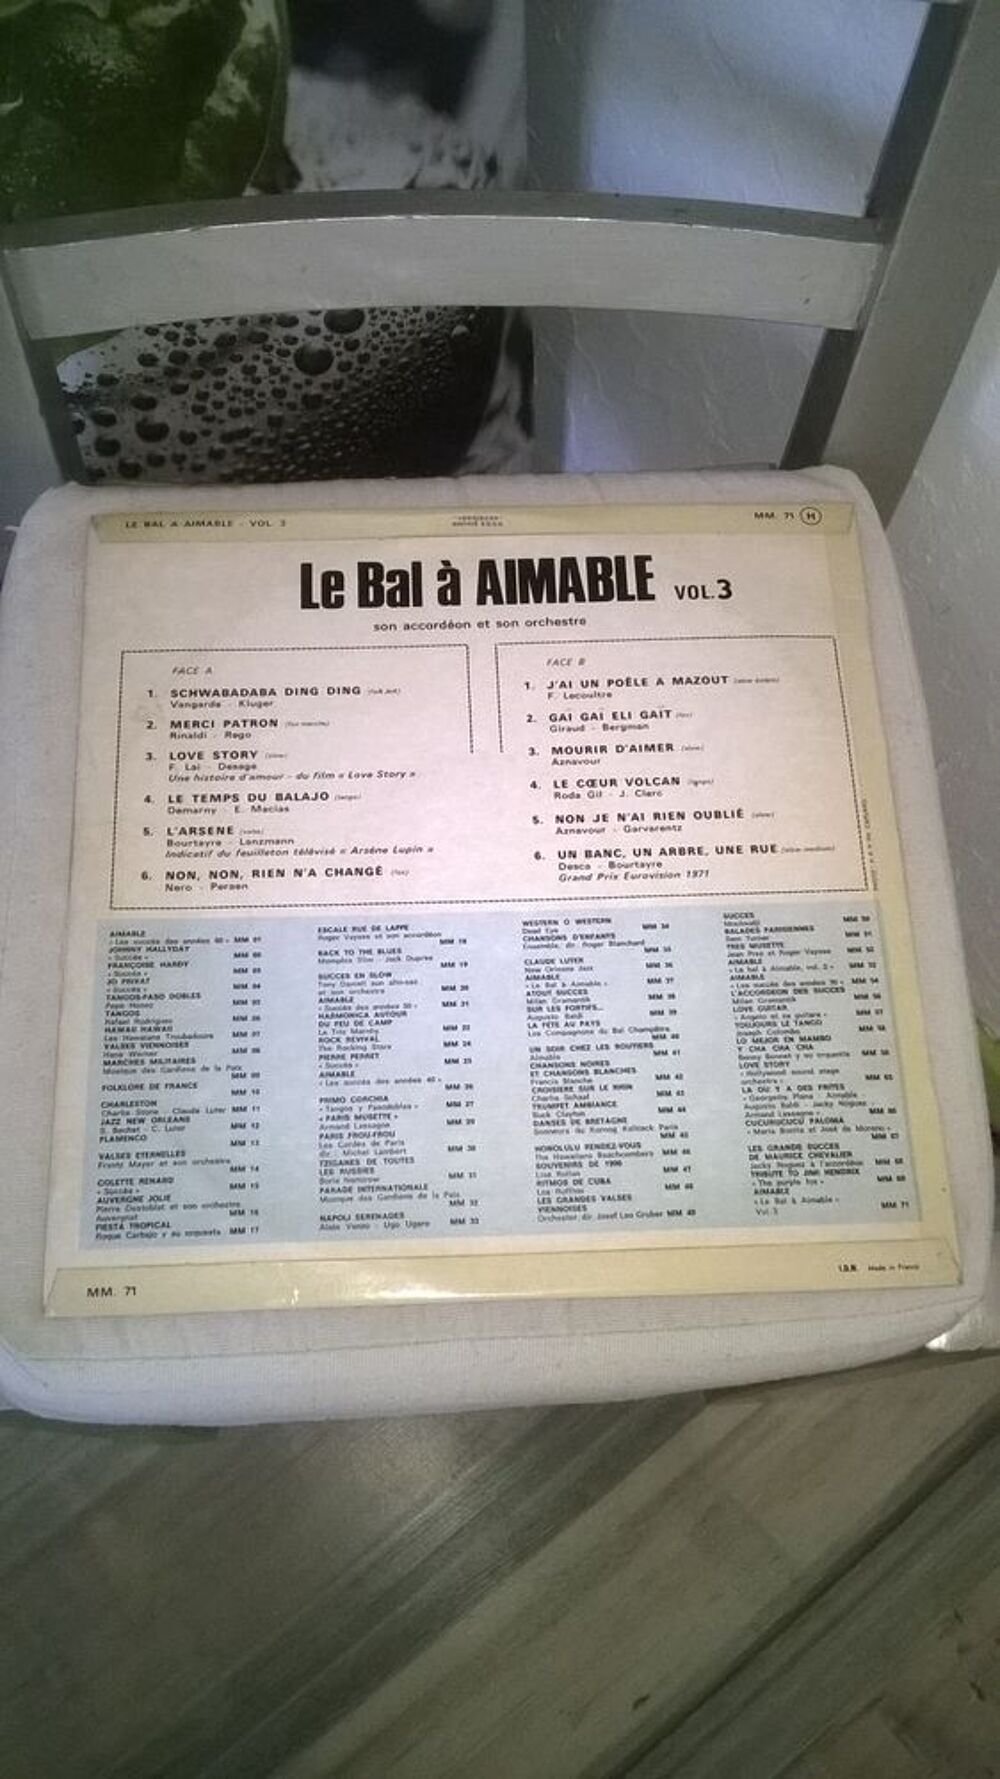 Vinyle Aimable
Le Bal A Aimable Vol. 3
Excellent etat
En CD et vinyles